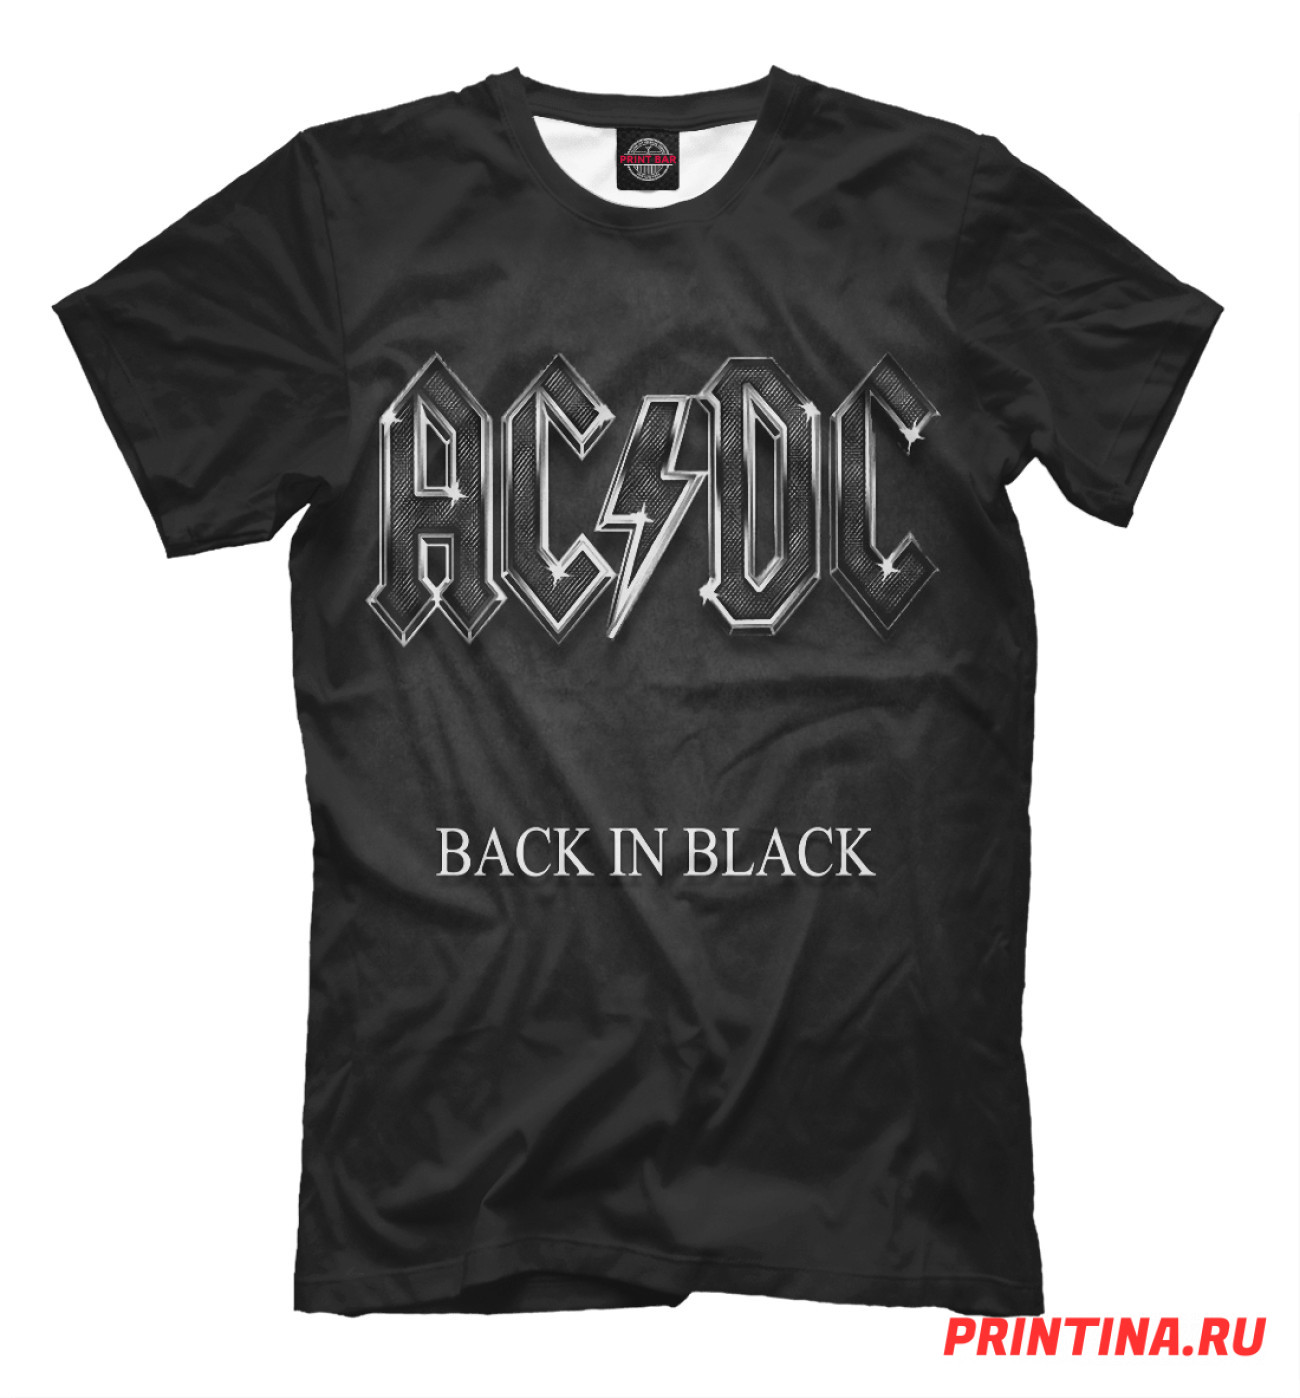 Мужская Футболка AC/DC Back in Black, артикул: ACD-402839-fut-2